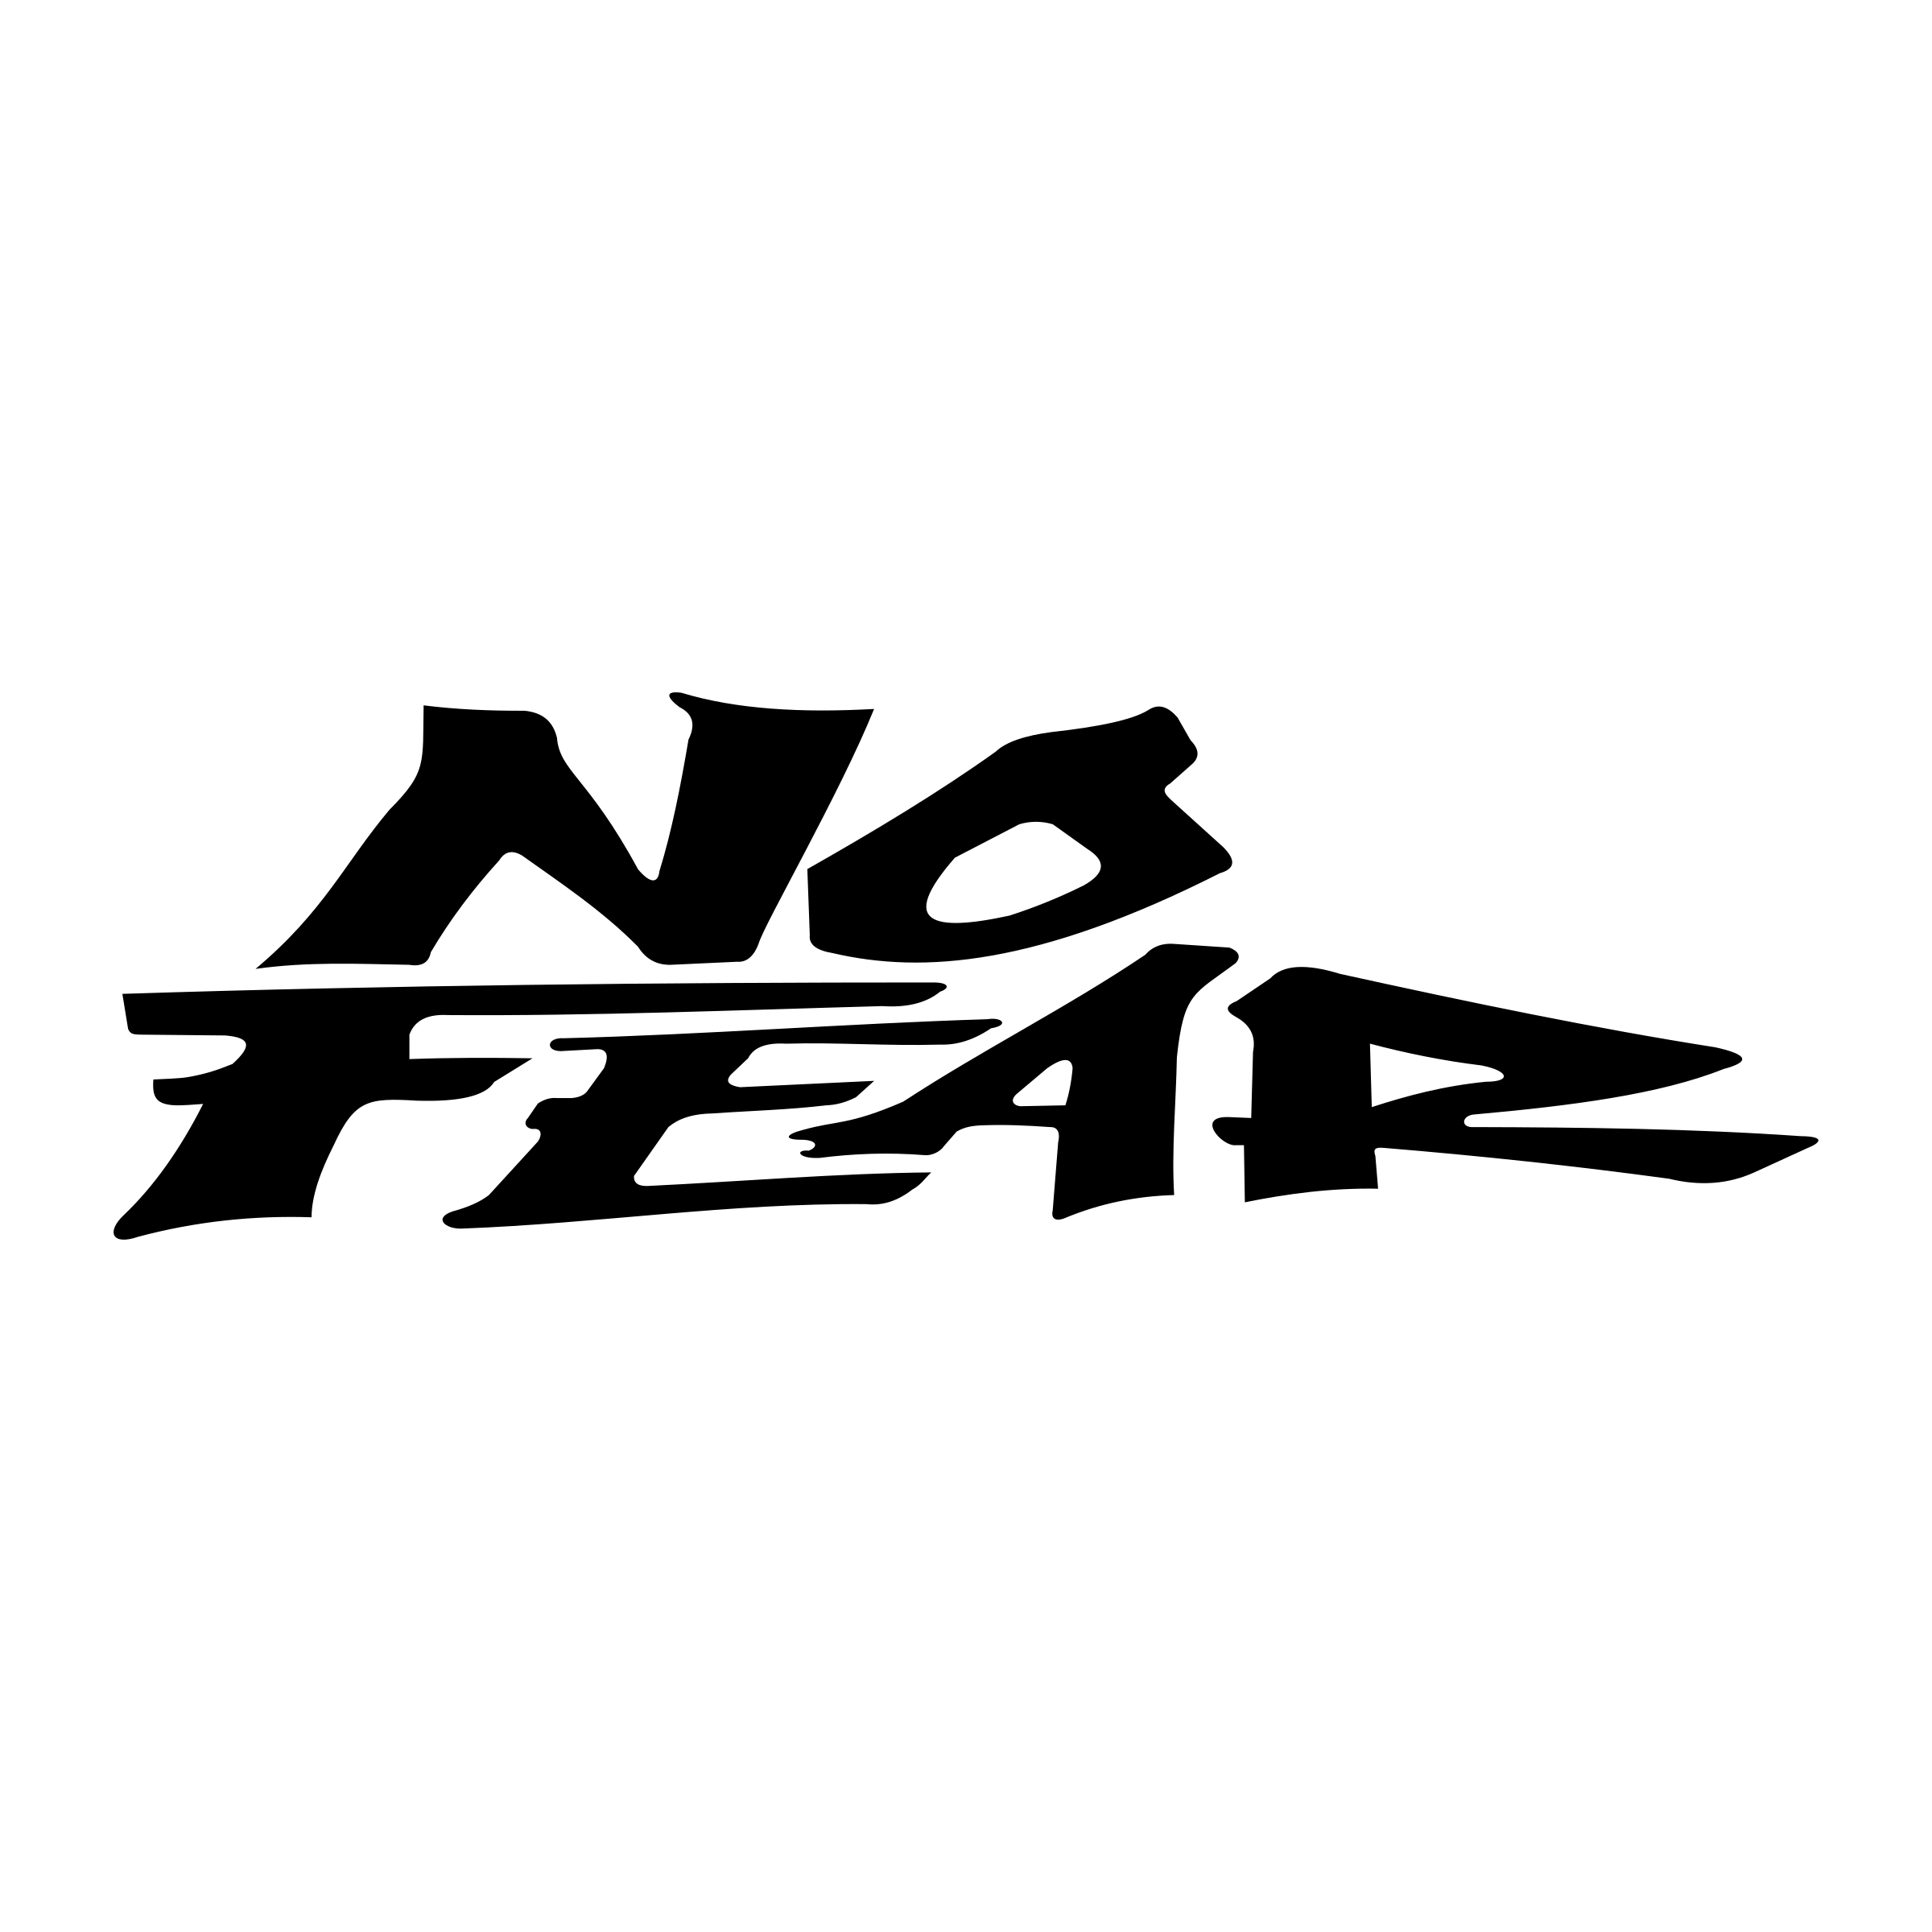 Fear Logo - No Fear Logo PNG Transparent & SVG Vector